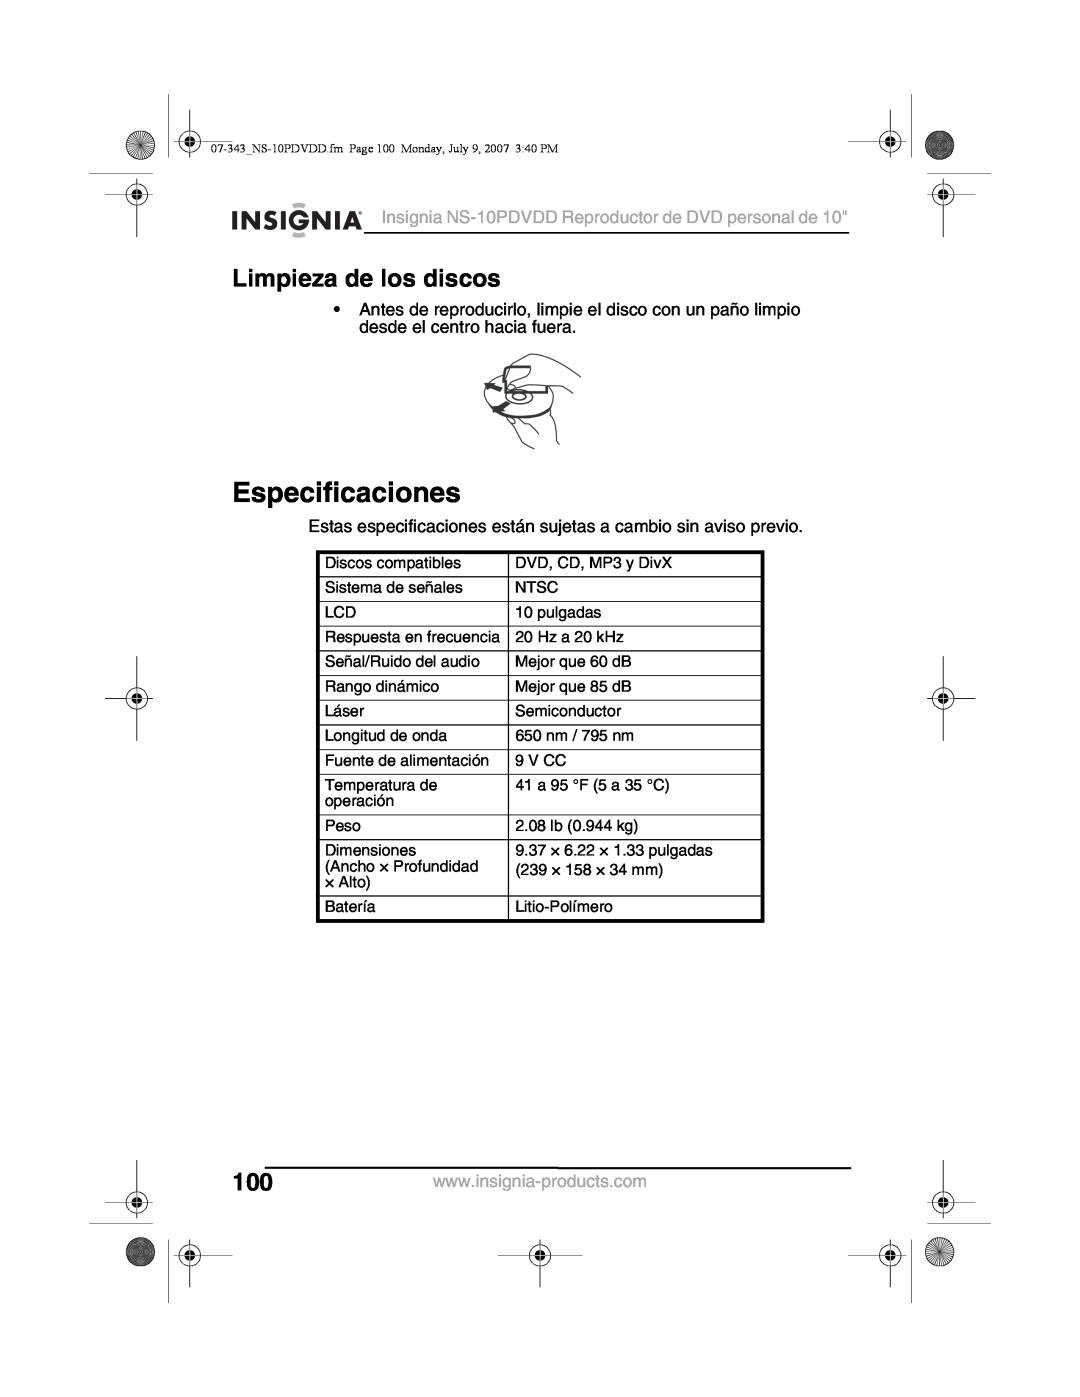 Insignia manual Especificaciones, Limpieza de los discos, Insignia NS-10PDVDD Reproductor de DVD personal de 